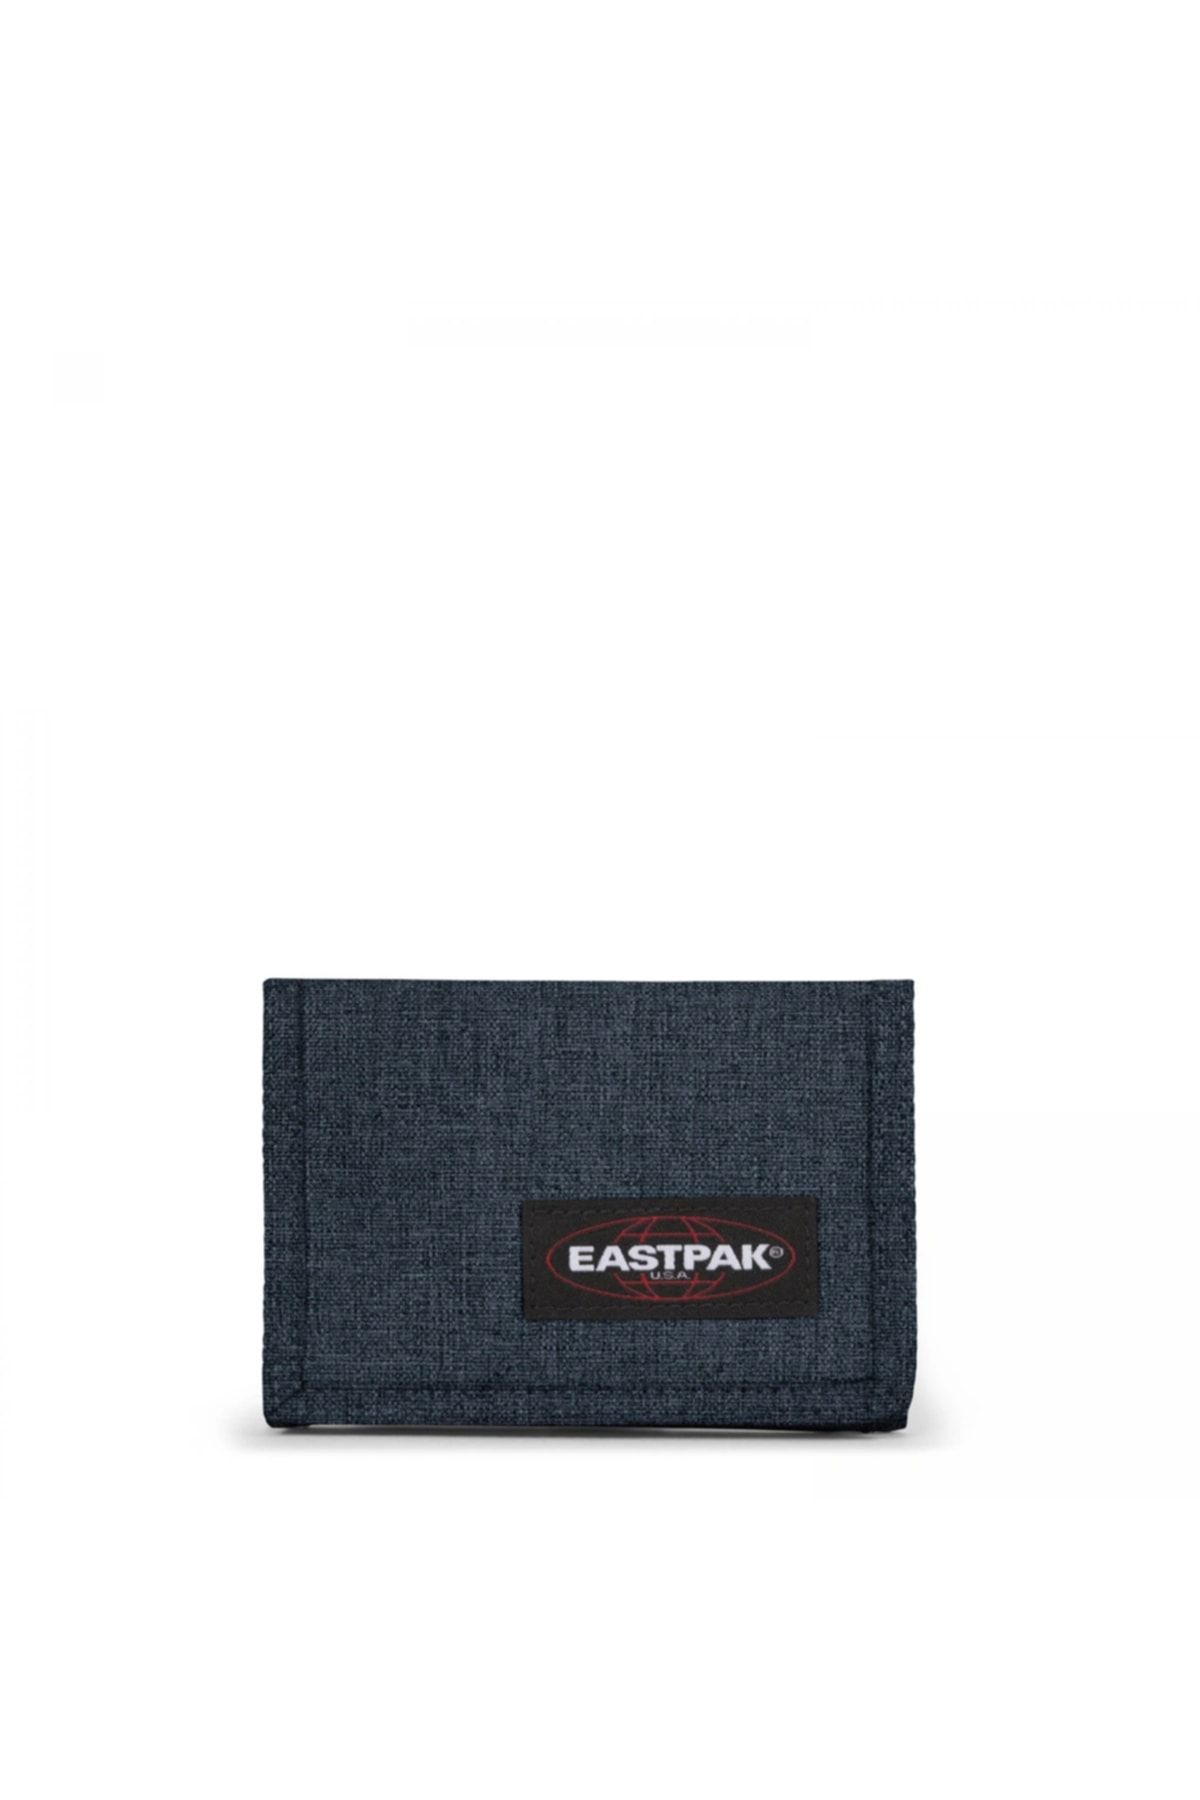 Eastpak Crew Single Unisex Lacivert Cüzdan Ek00037126w1